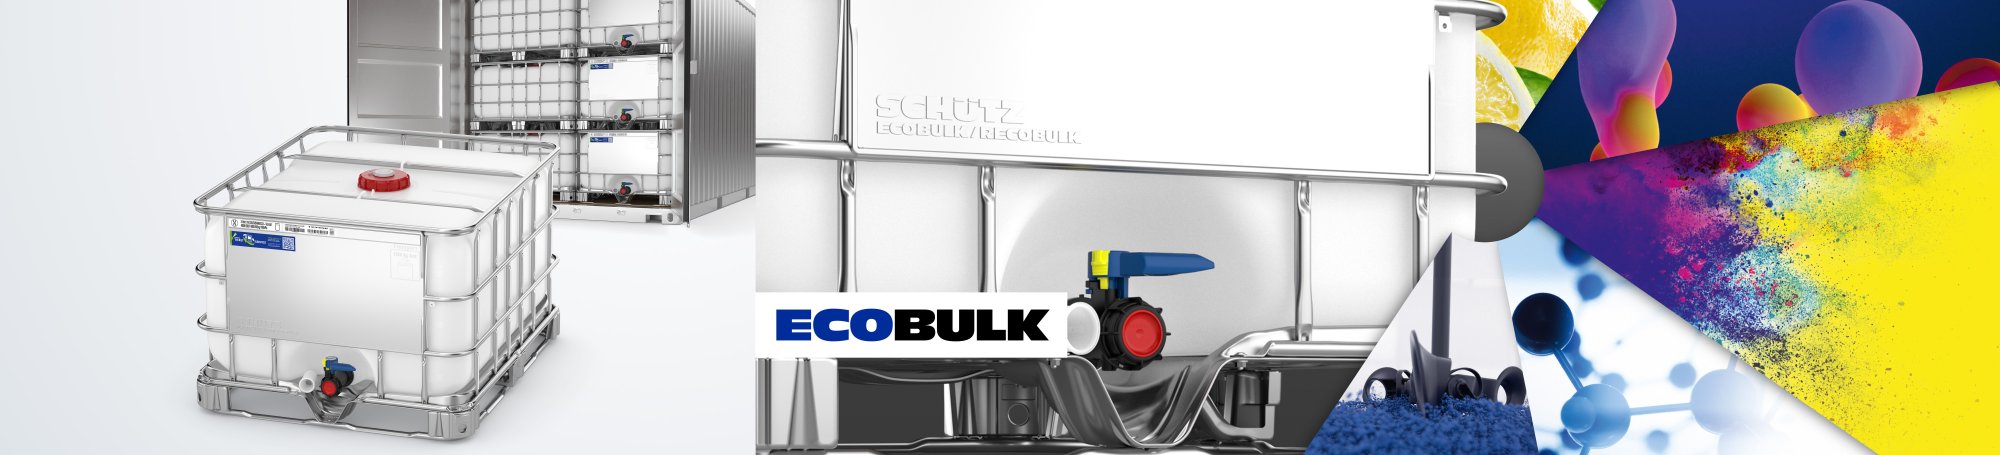 ECOBULK MX 560